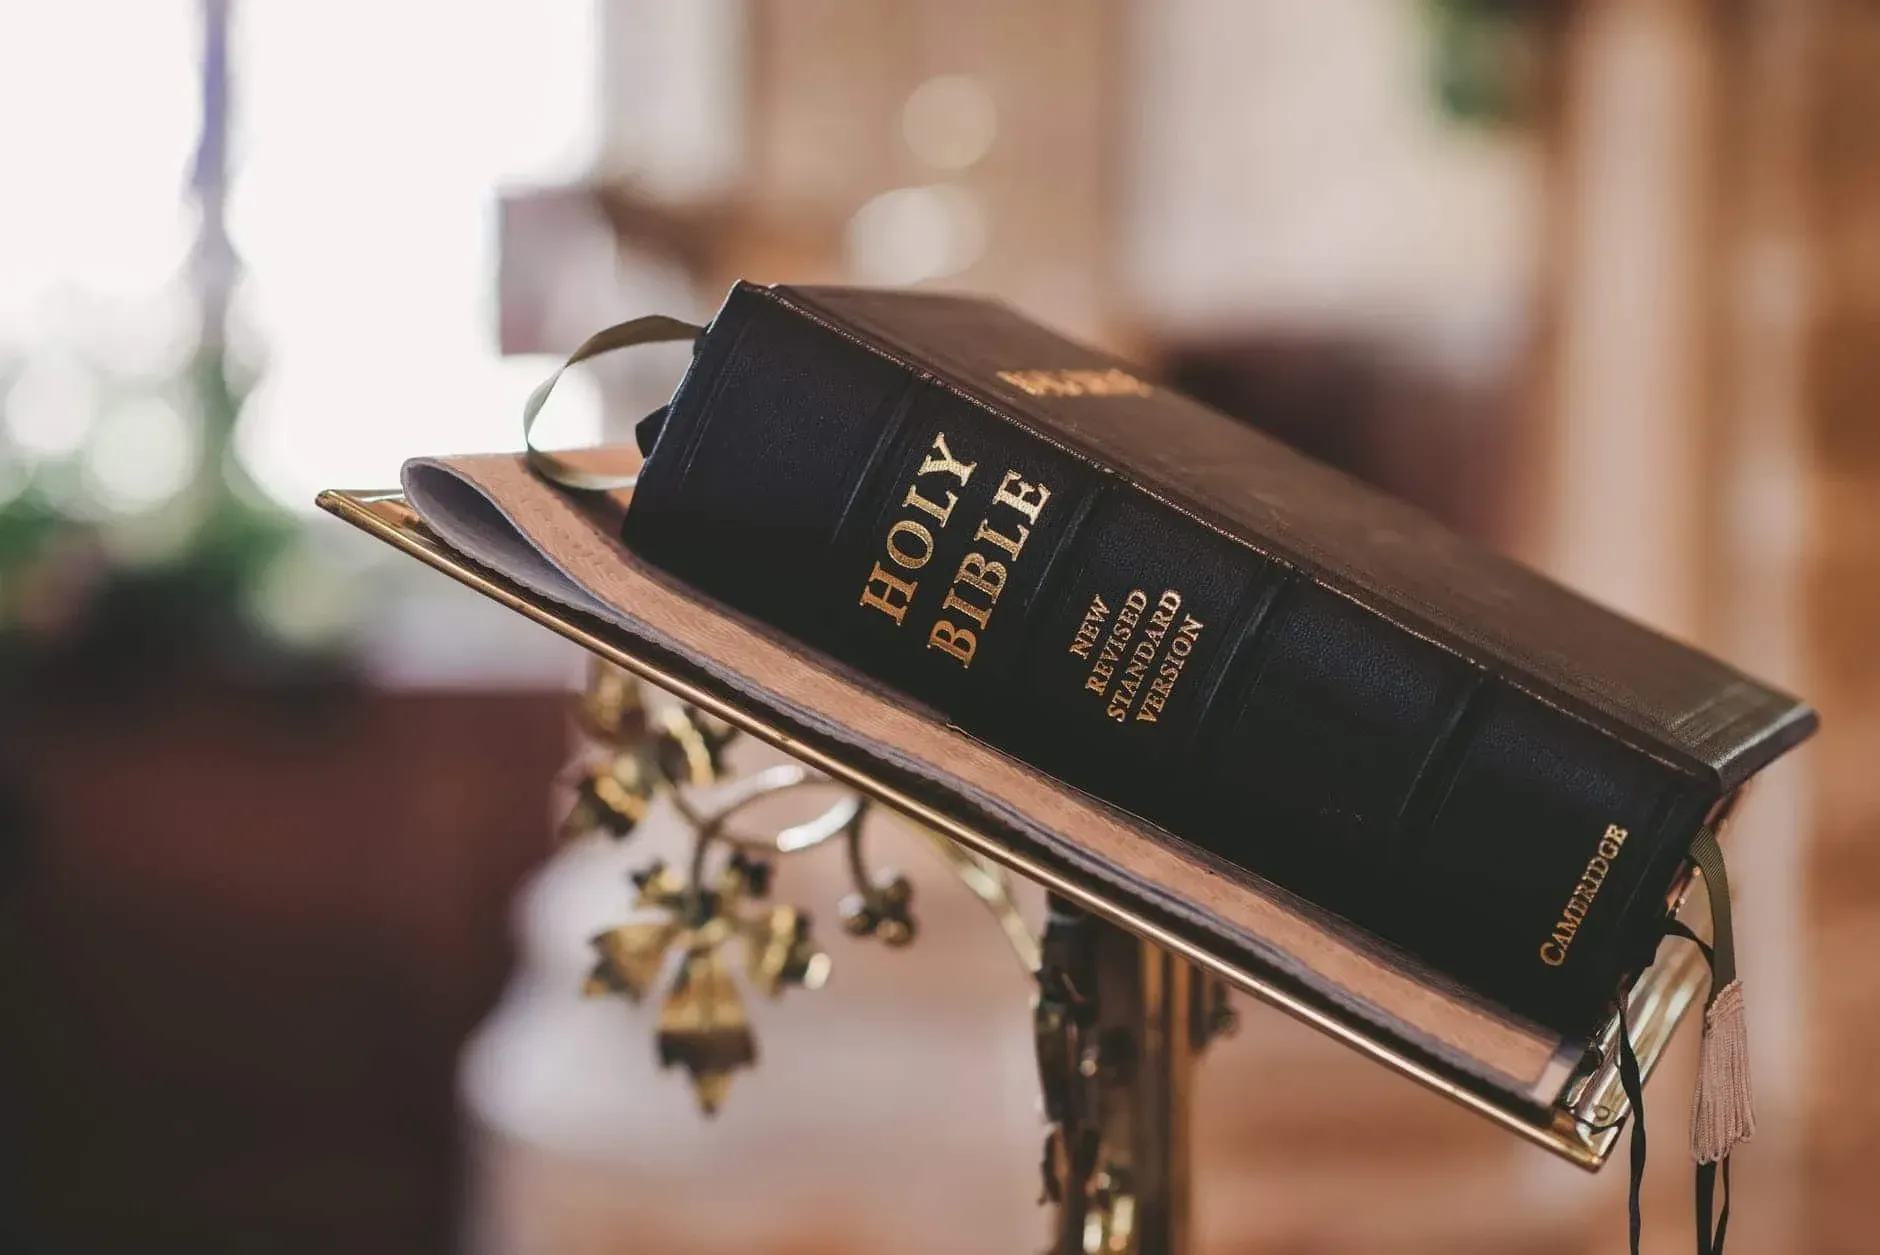 Christians preach the Bible at Church